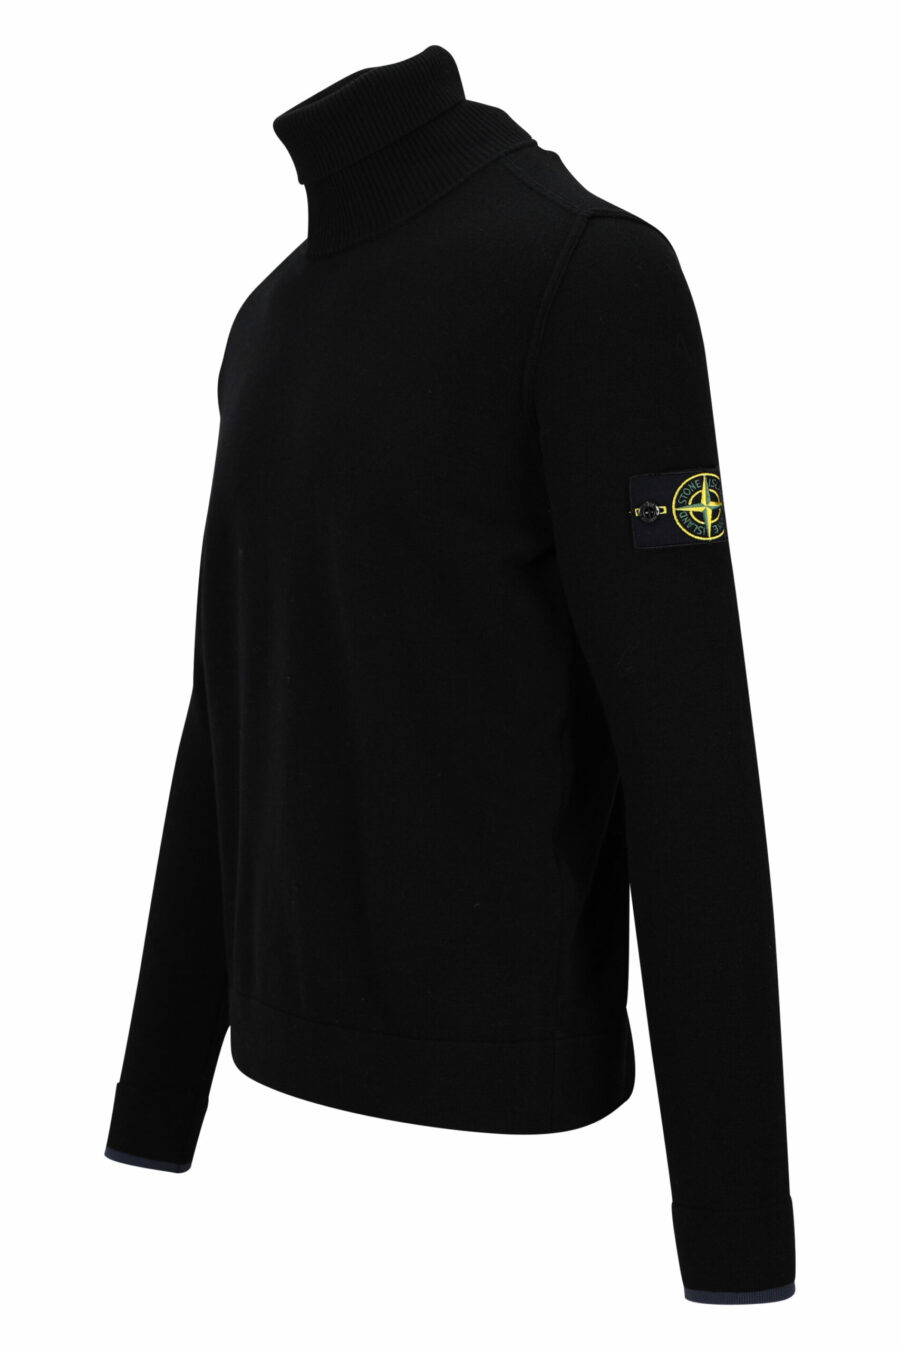 Schwarzes Sweatshirt mit hohem Kragen und seitlichem Logoaufnäher - 8052572741814 1 skaliert